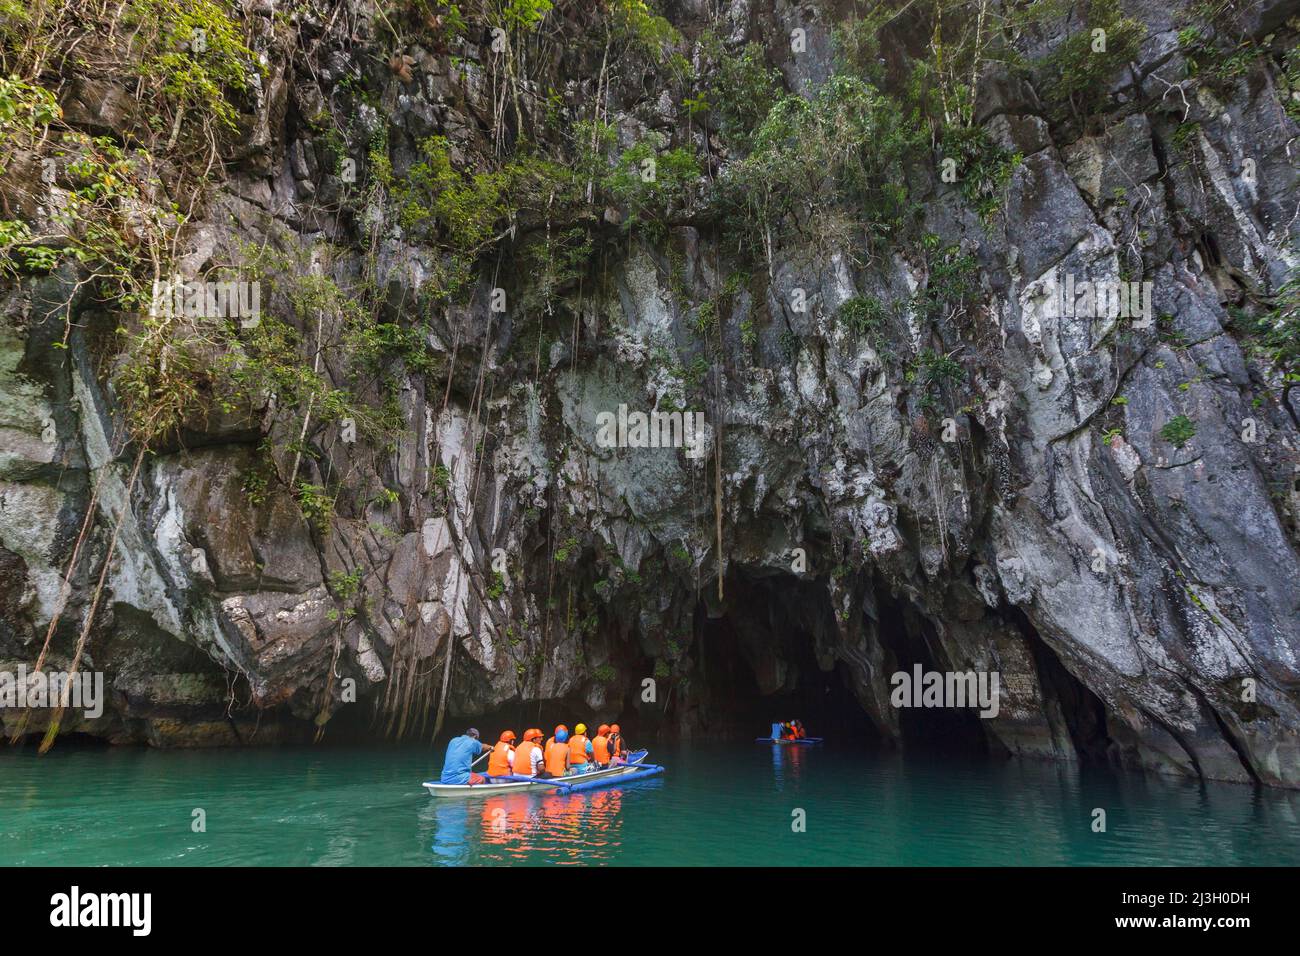 Philippinen, Palawan, Puerto Princesa Subterranean River National Park, Outrigger Kanu dockte am Sandstrand, wo Touristen aussteigen, um die Höhlen zu besuchen Stockfoto